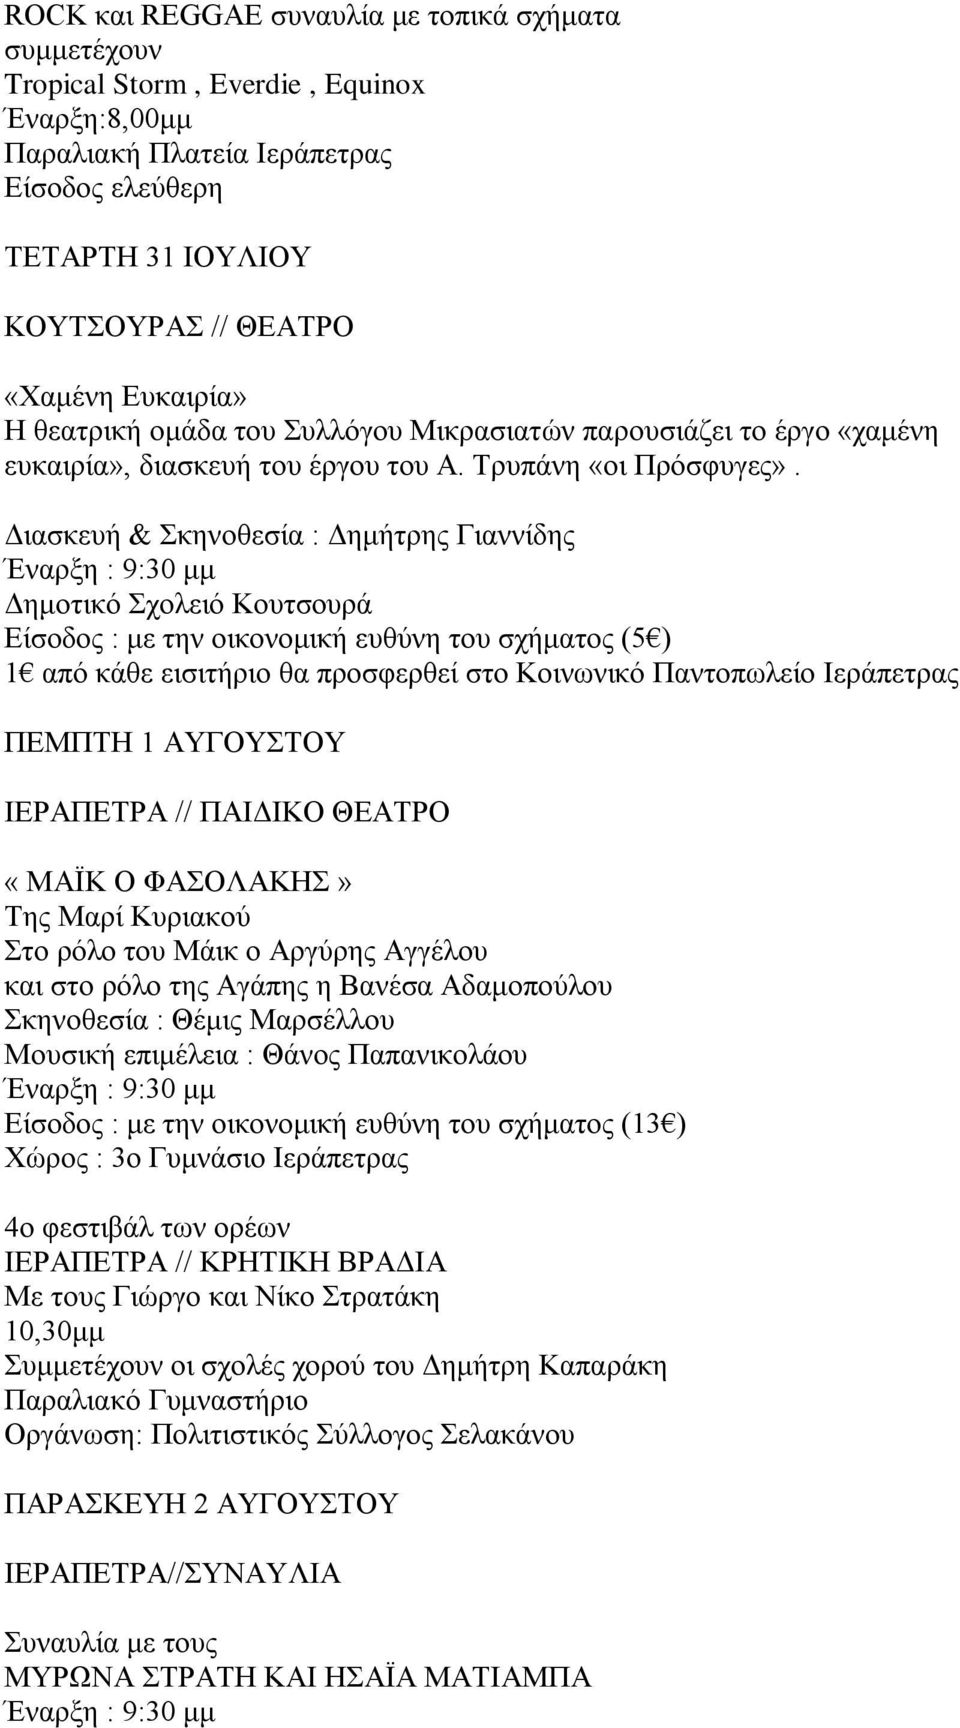 Διασκευή & Σκηνοθεσία : Δημήτρης Γιαννίδης Δημοτικό Σχολειό Κουτσουρά Είσοδος : με την οικονομική ευθύνη του σχήματος (5 ) 1 από κάθε εισιτήριο θα προσφερθεί στο Κοινωνικό Παντοπωλείο Ιεράπετρας